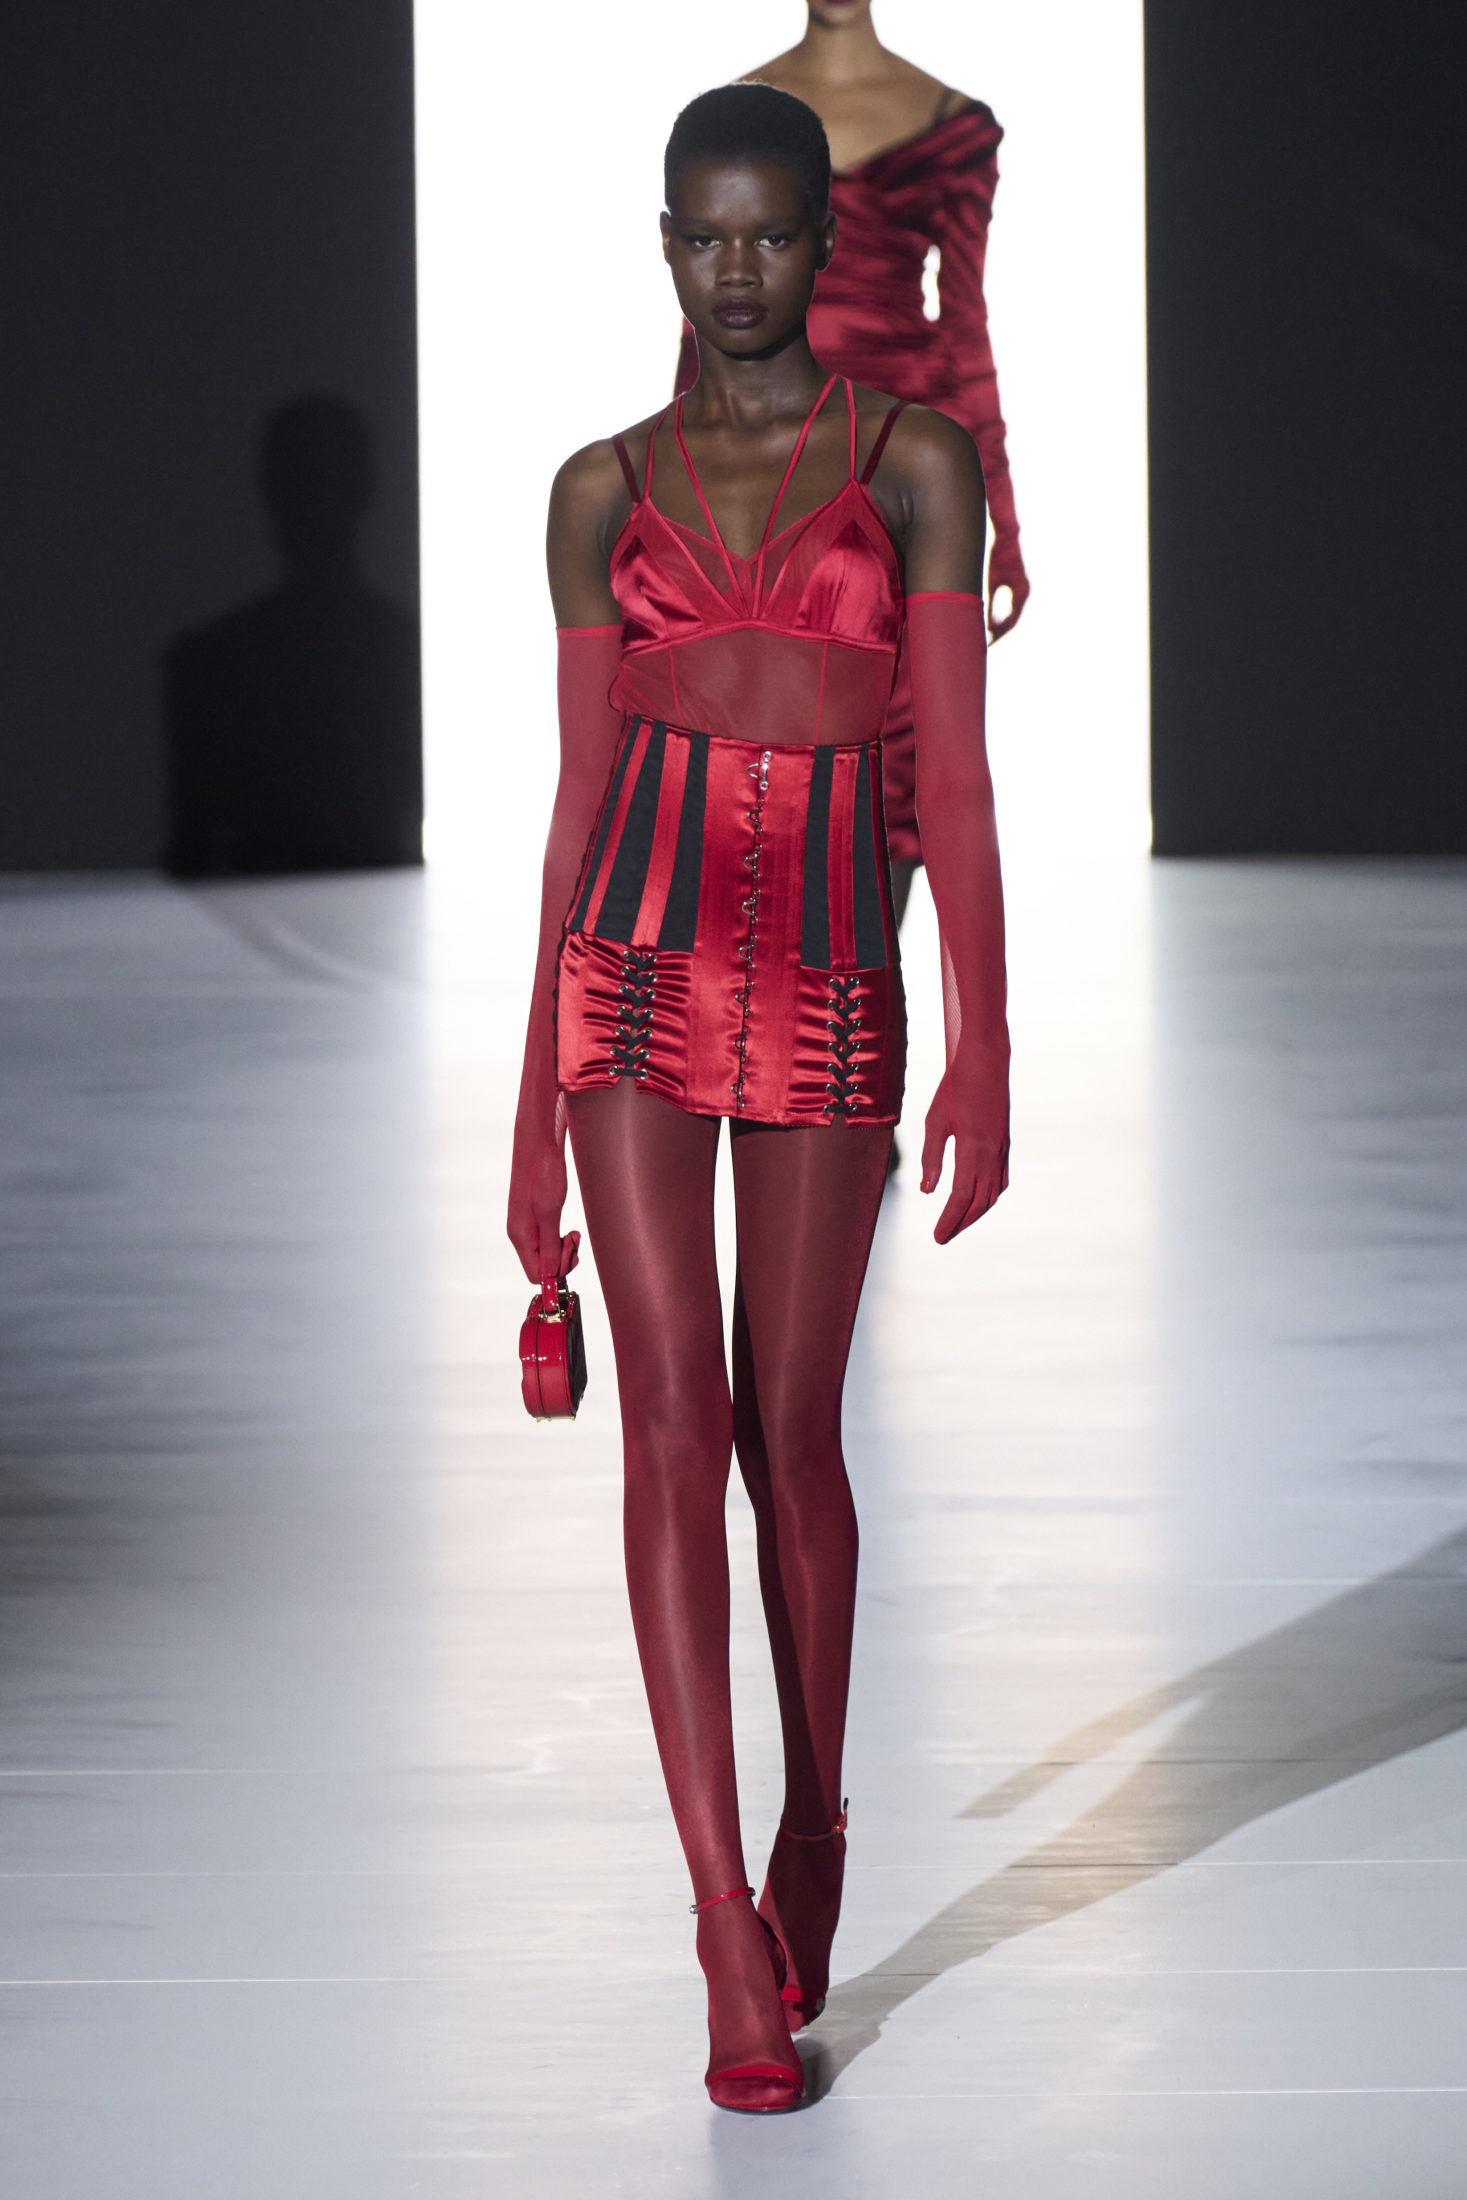 Код красный: теперь вы знаете главный оттенок коллекций четвертого дня Недели моды в Милане